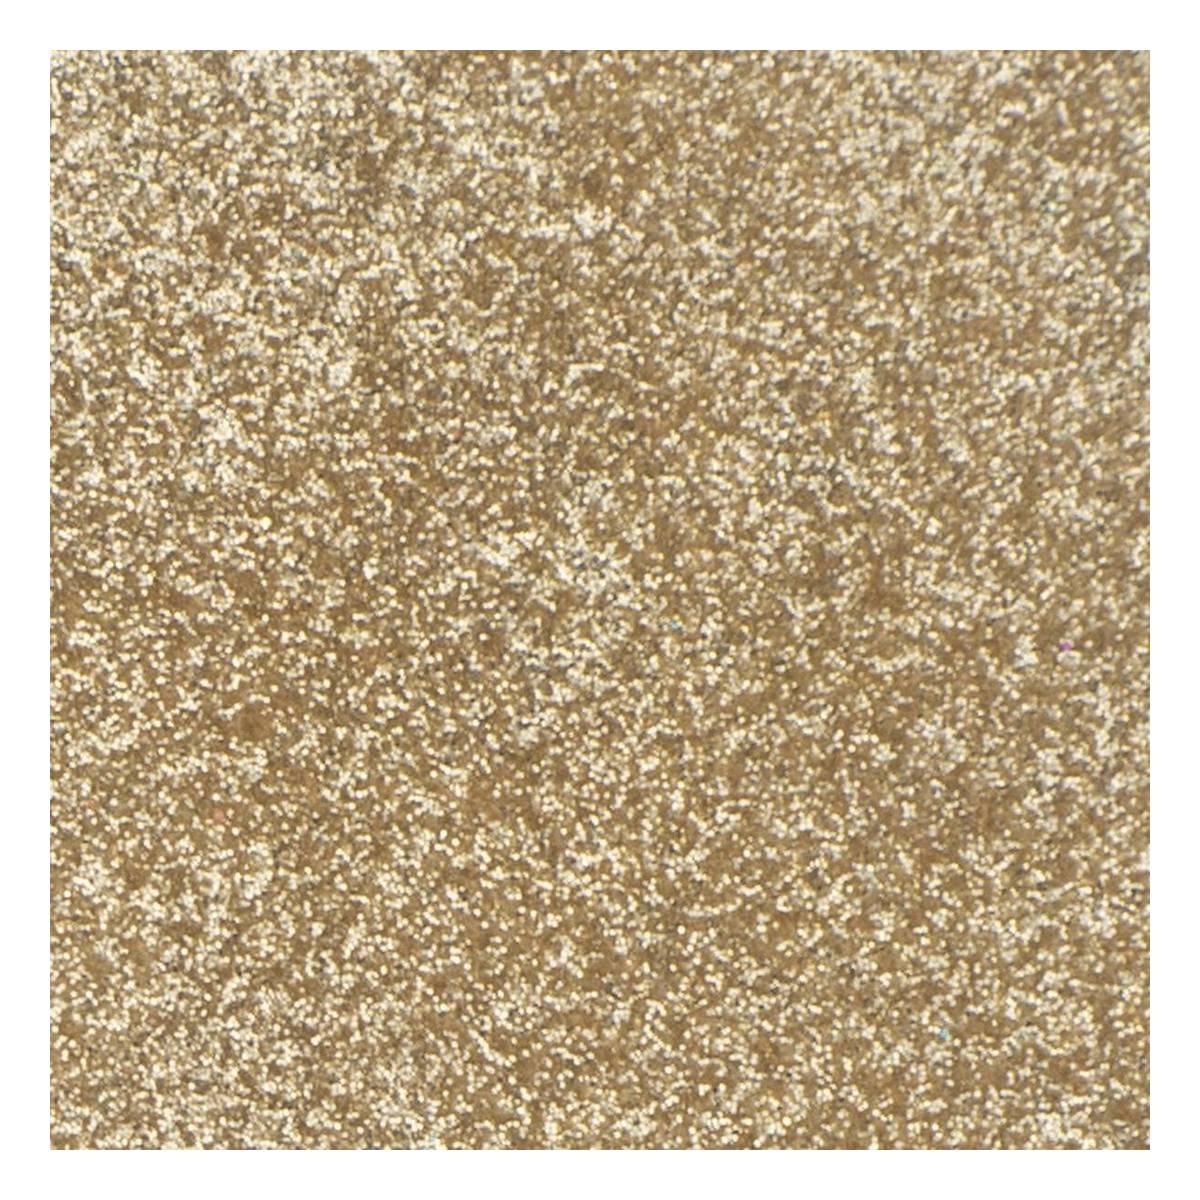 Cosmic Shimmer Golden Sand Biodegradable Glitter 10ml